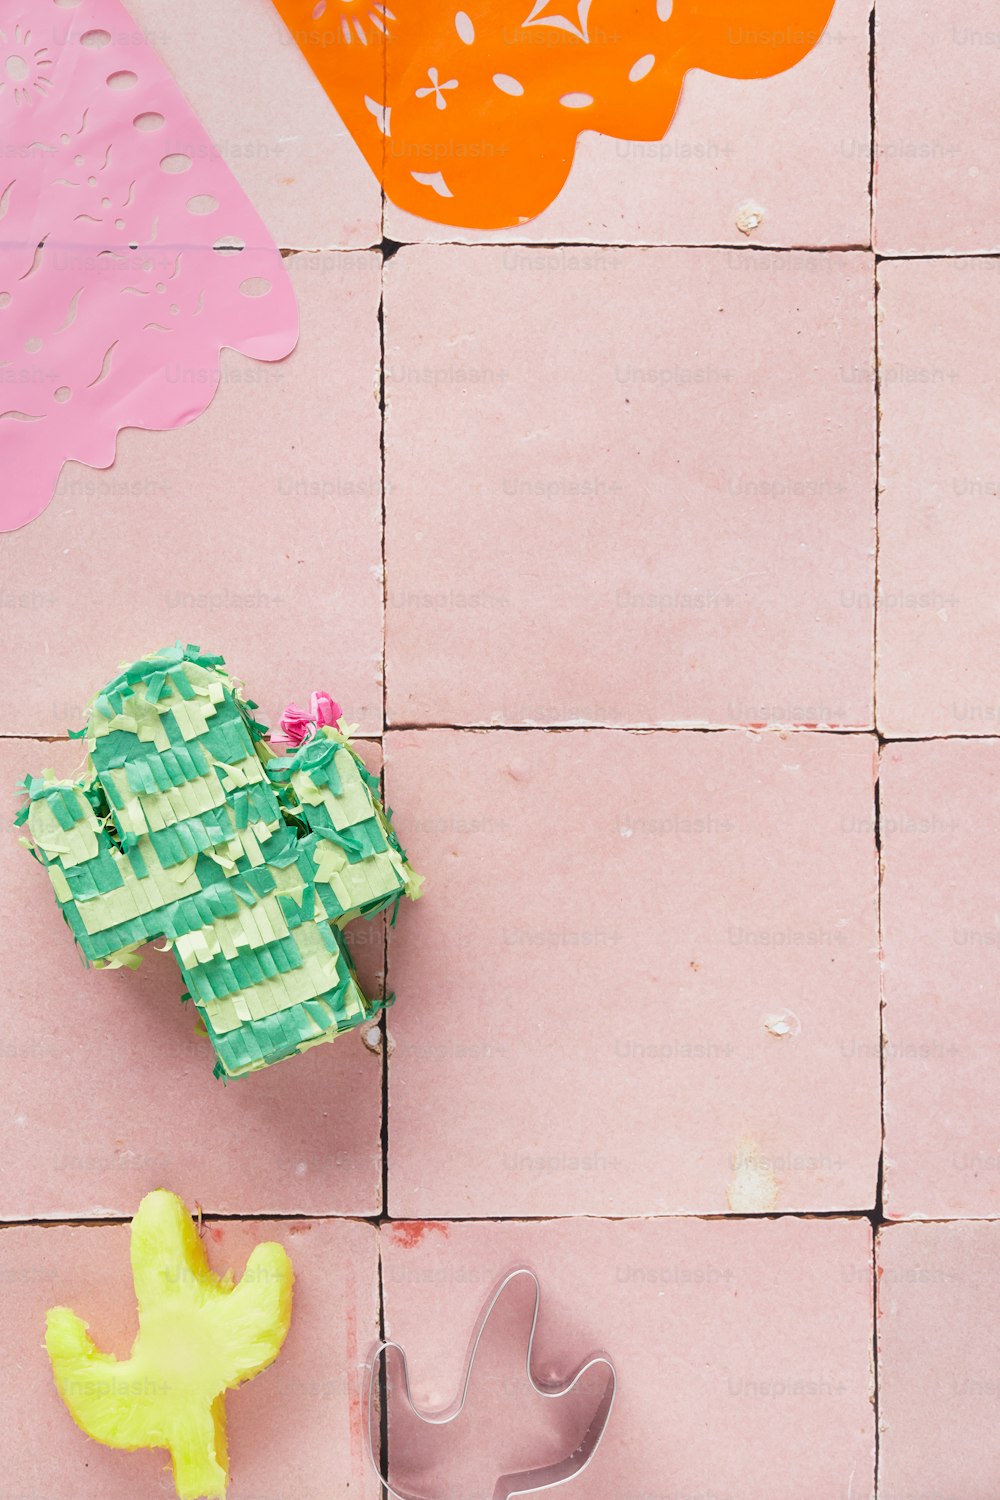 un suelo de baldosas rosas con un cactus y un cortador de pasteles